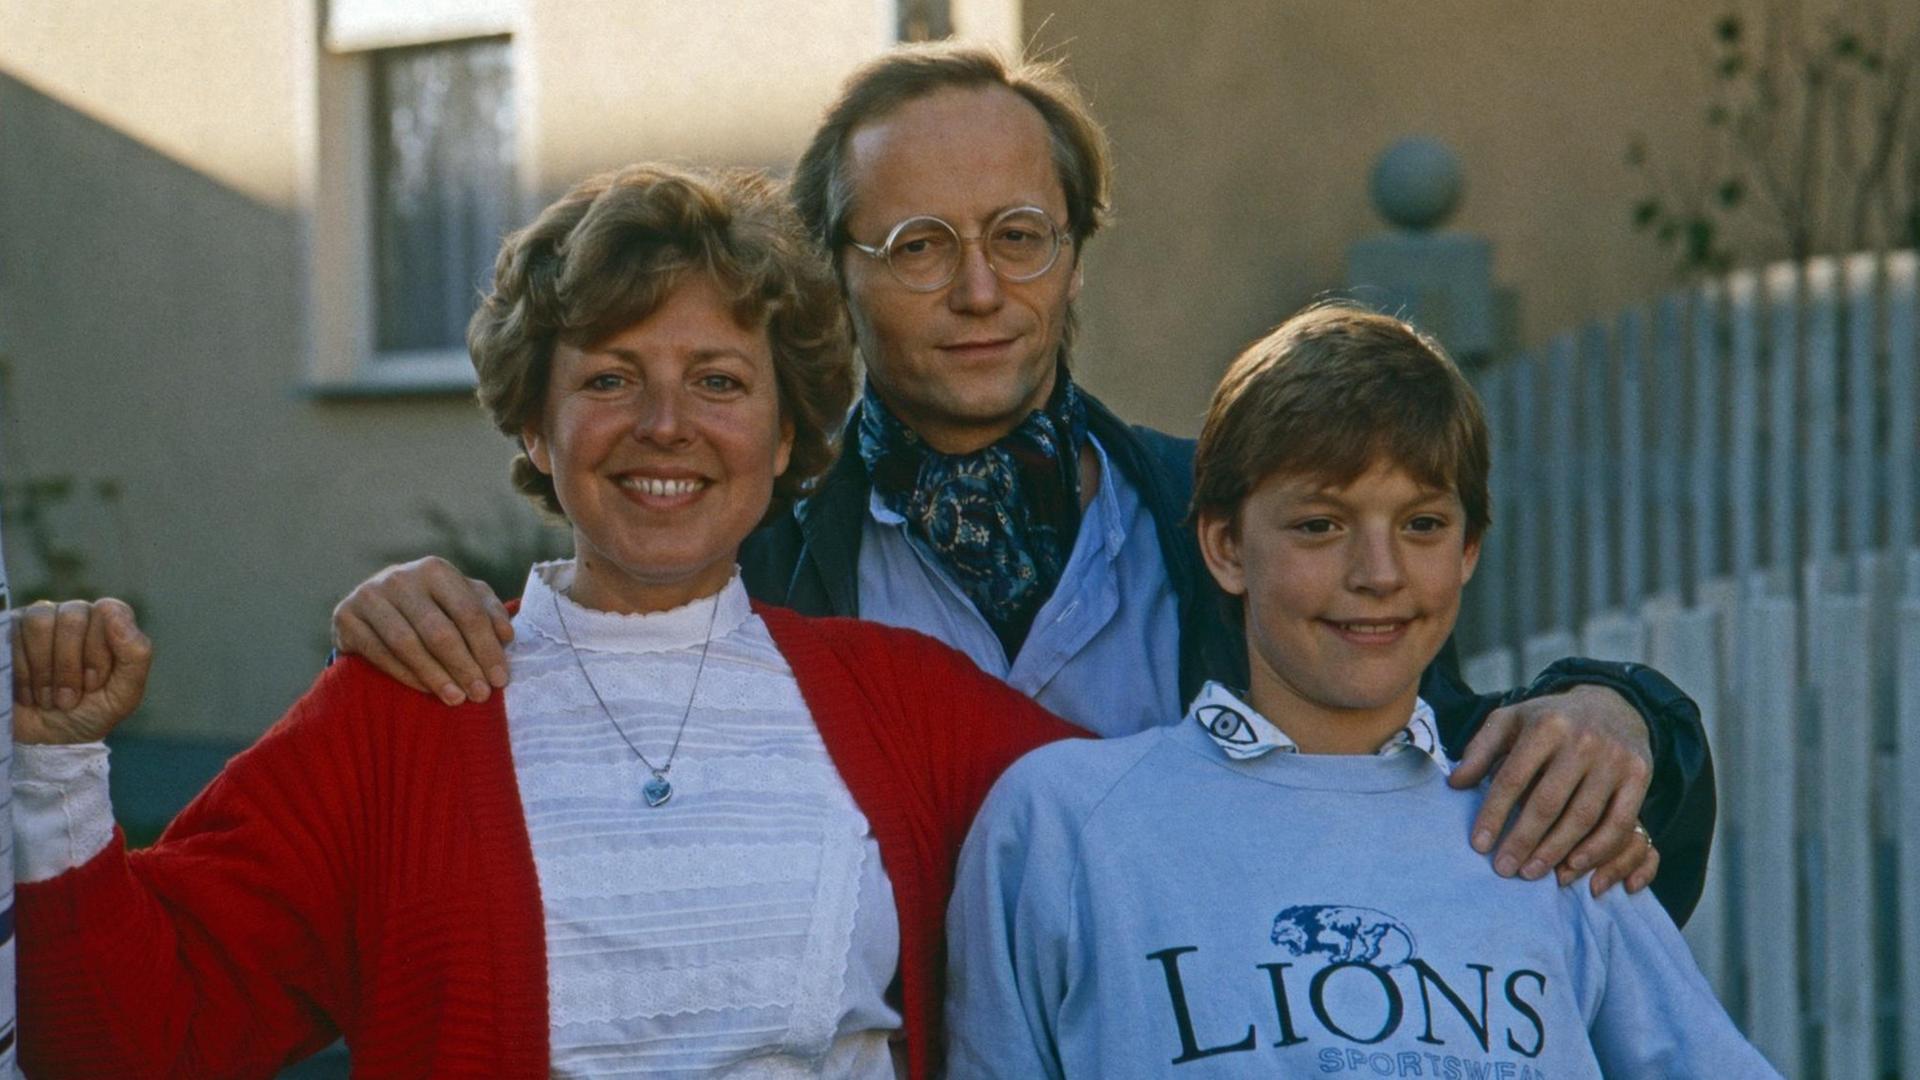 Das Bild zeigt eine Szene aus der Fernsehserie "Lindenstraße" mit Mutter Beimer. Es zeigt die Darsteller Marie Luise Marjan, Joachim Luger und Christian Kahrmann.